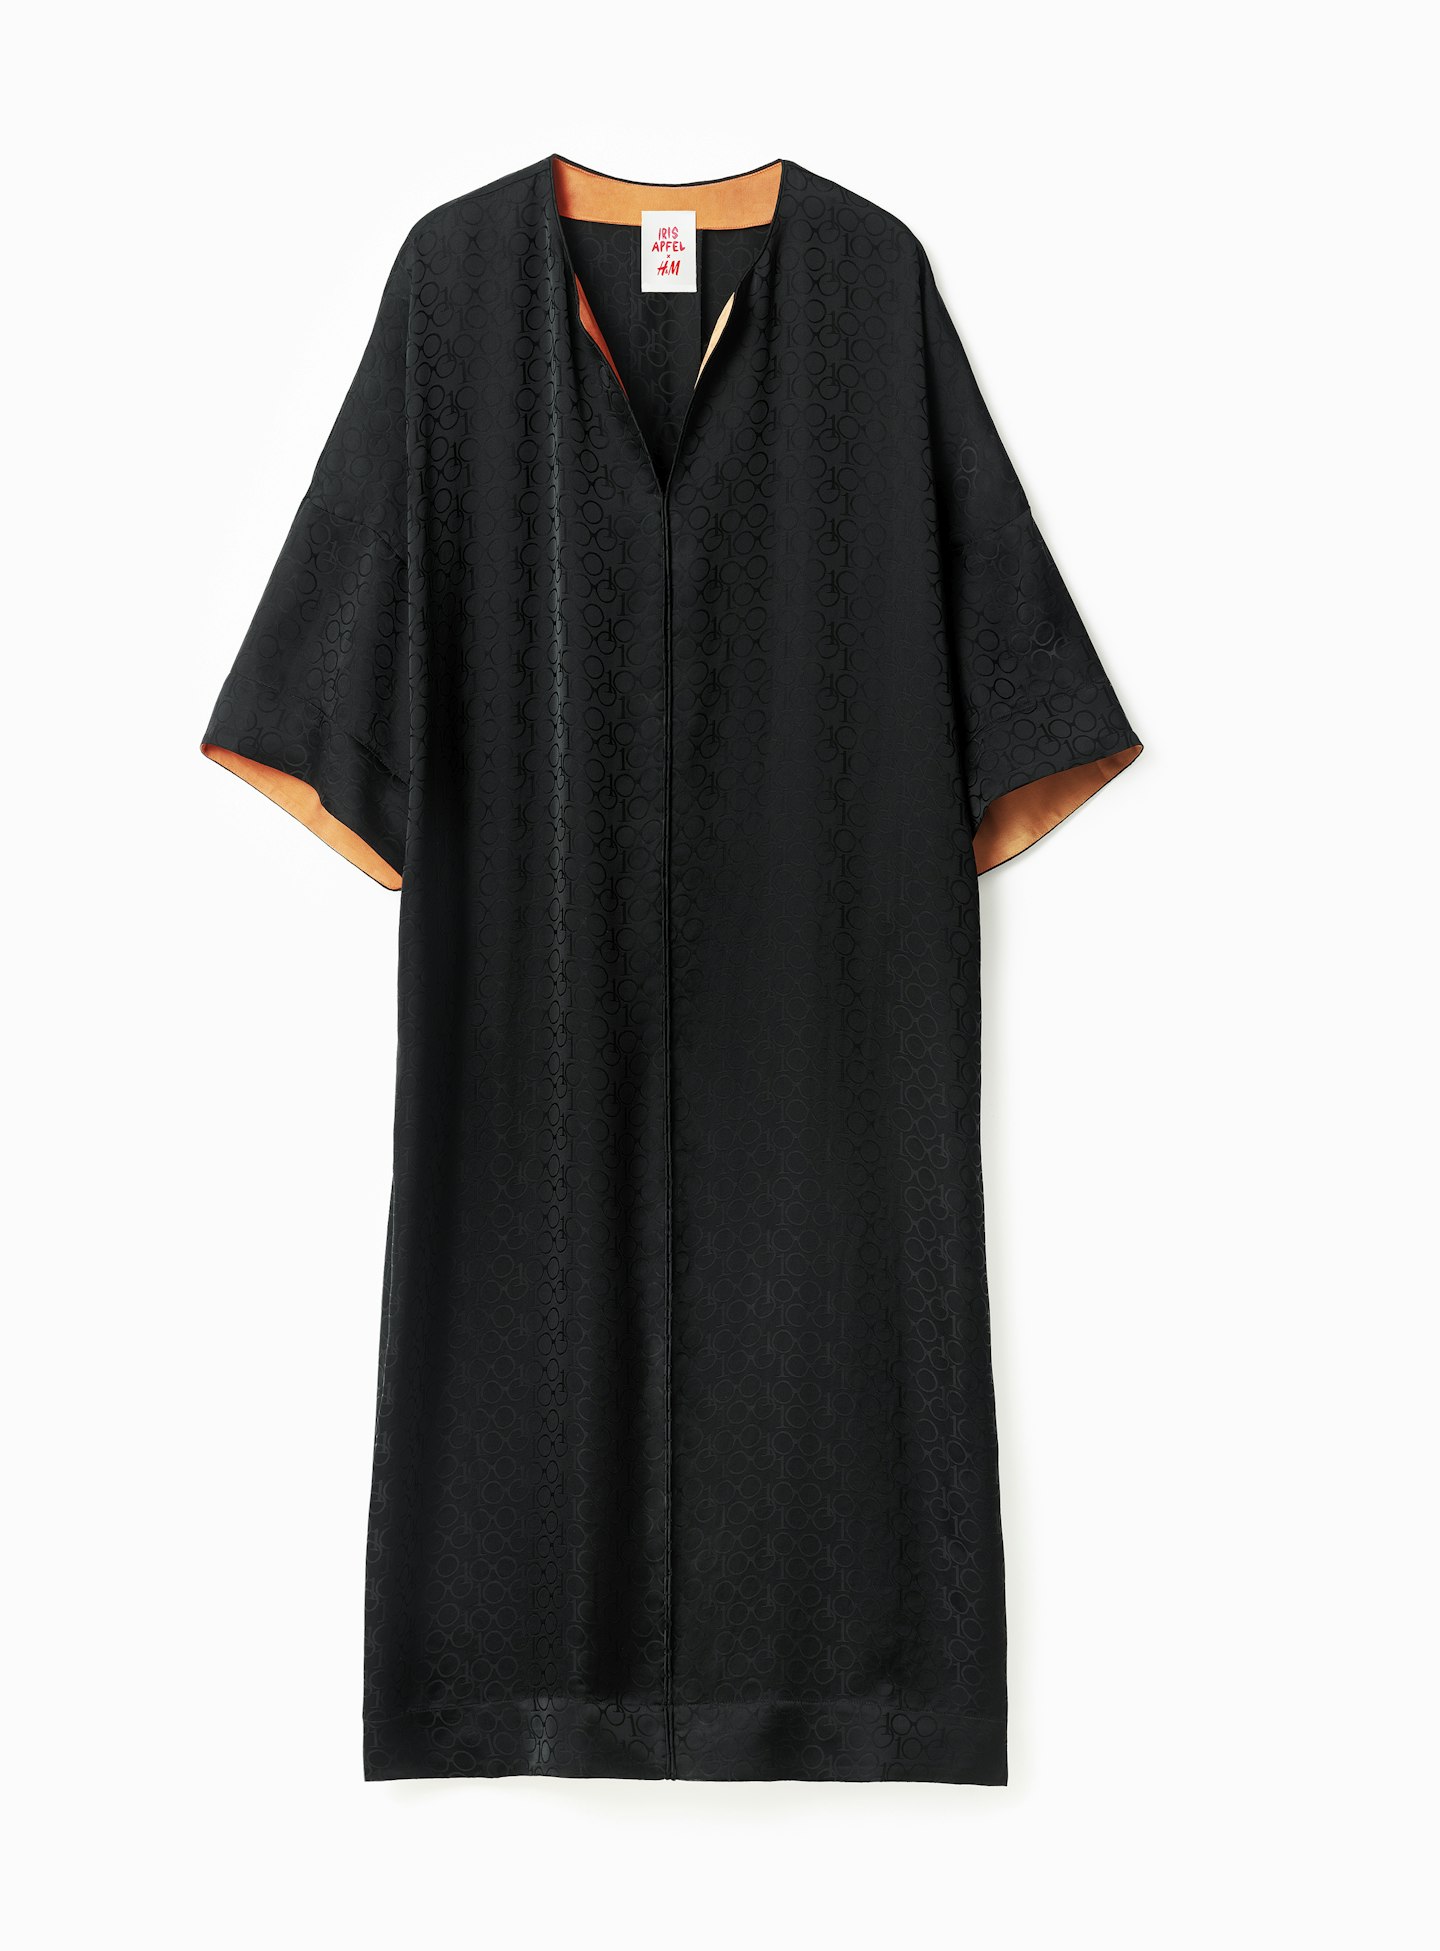 Dress, £79.99